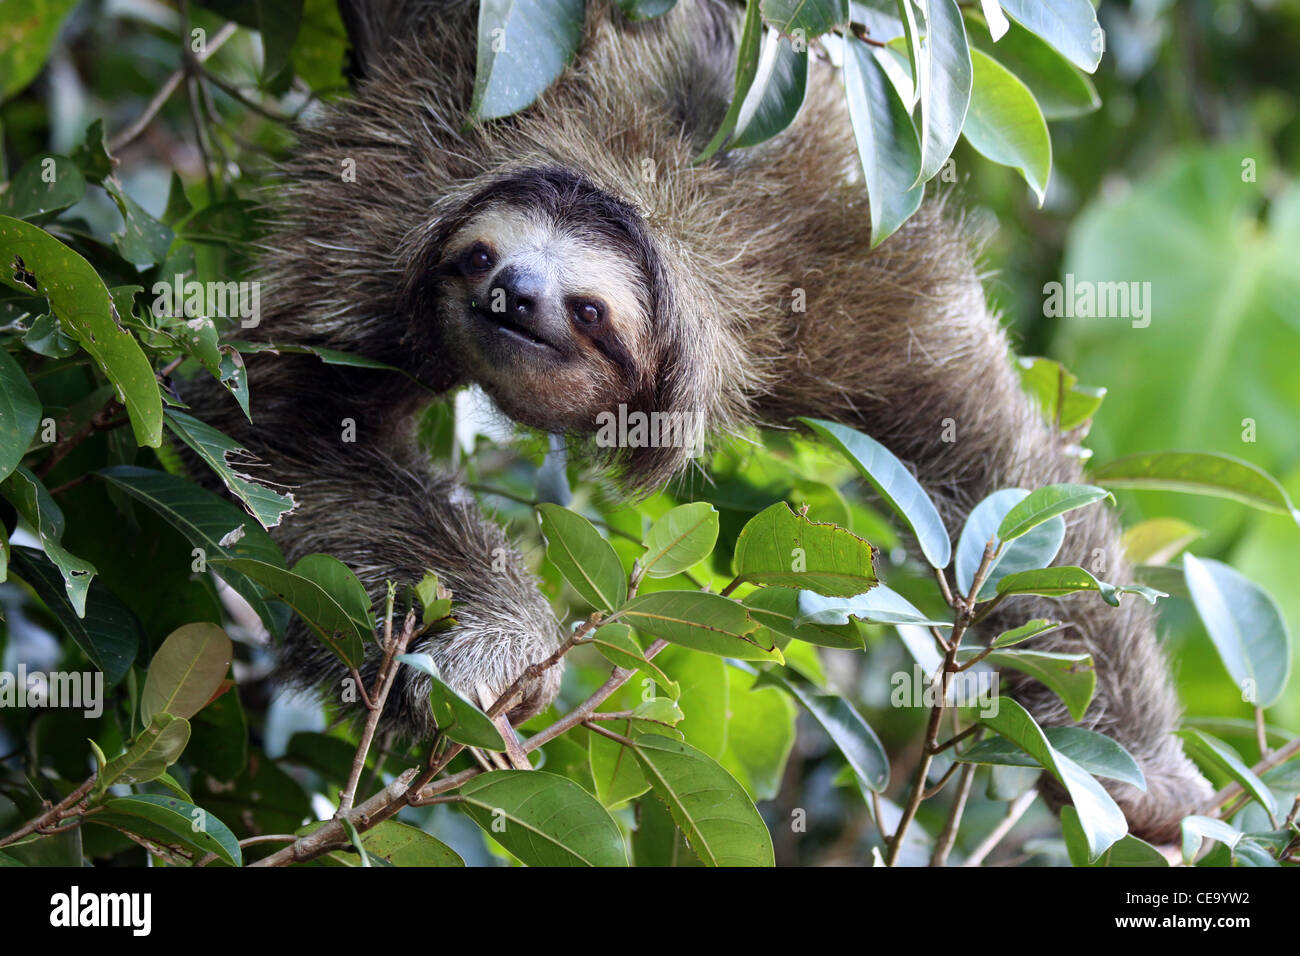 Brown-throated Sloth Bradypus variegatus Stock Photo